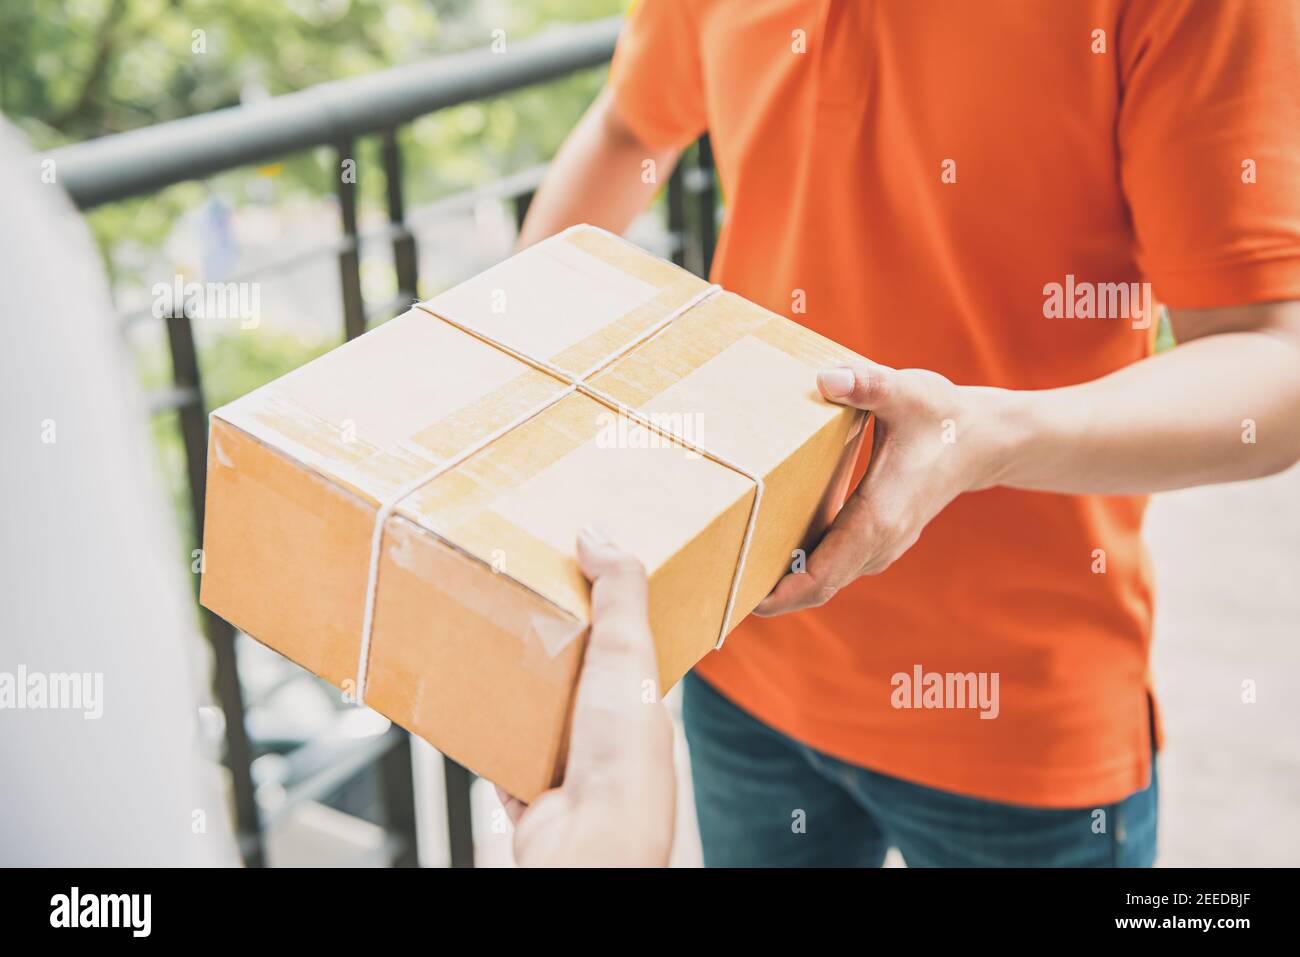 Ein Liefermann in orangefarbener Uniform überreicht einen Paketkasten An einen Kunden - Kurierservice-Konzept Stockfoto